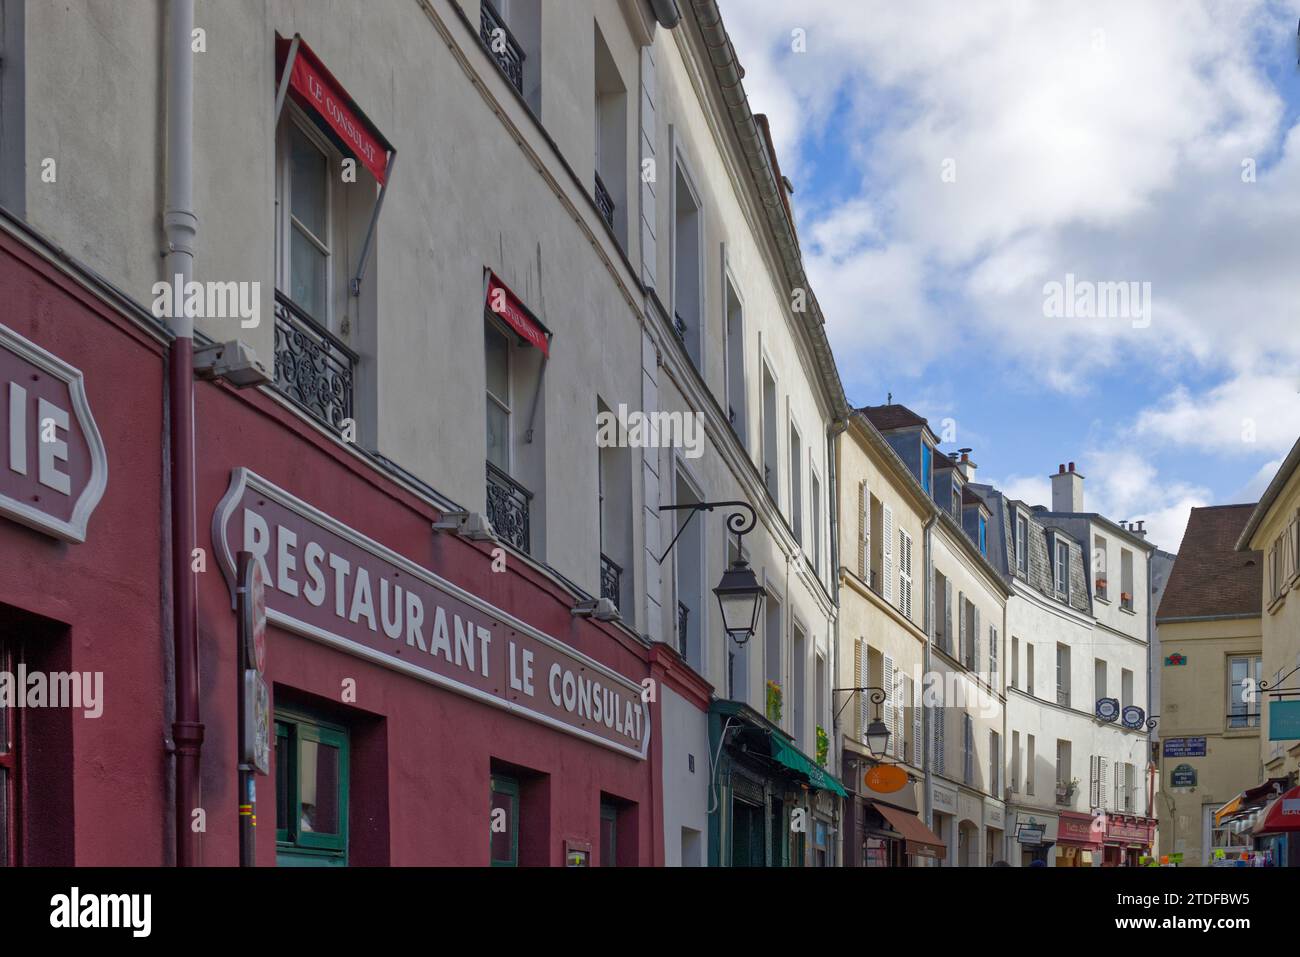 Restaurant le Consulat, rue Norvins, Montmartre, Paris, France - ce célèbre café était autrefois le lieu de rencontre de nombreux artistes célèbres Banque D'Images